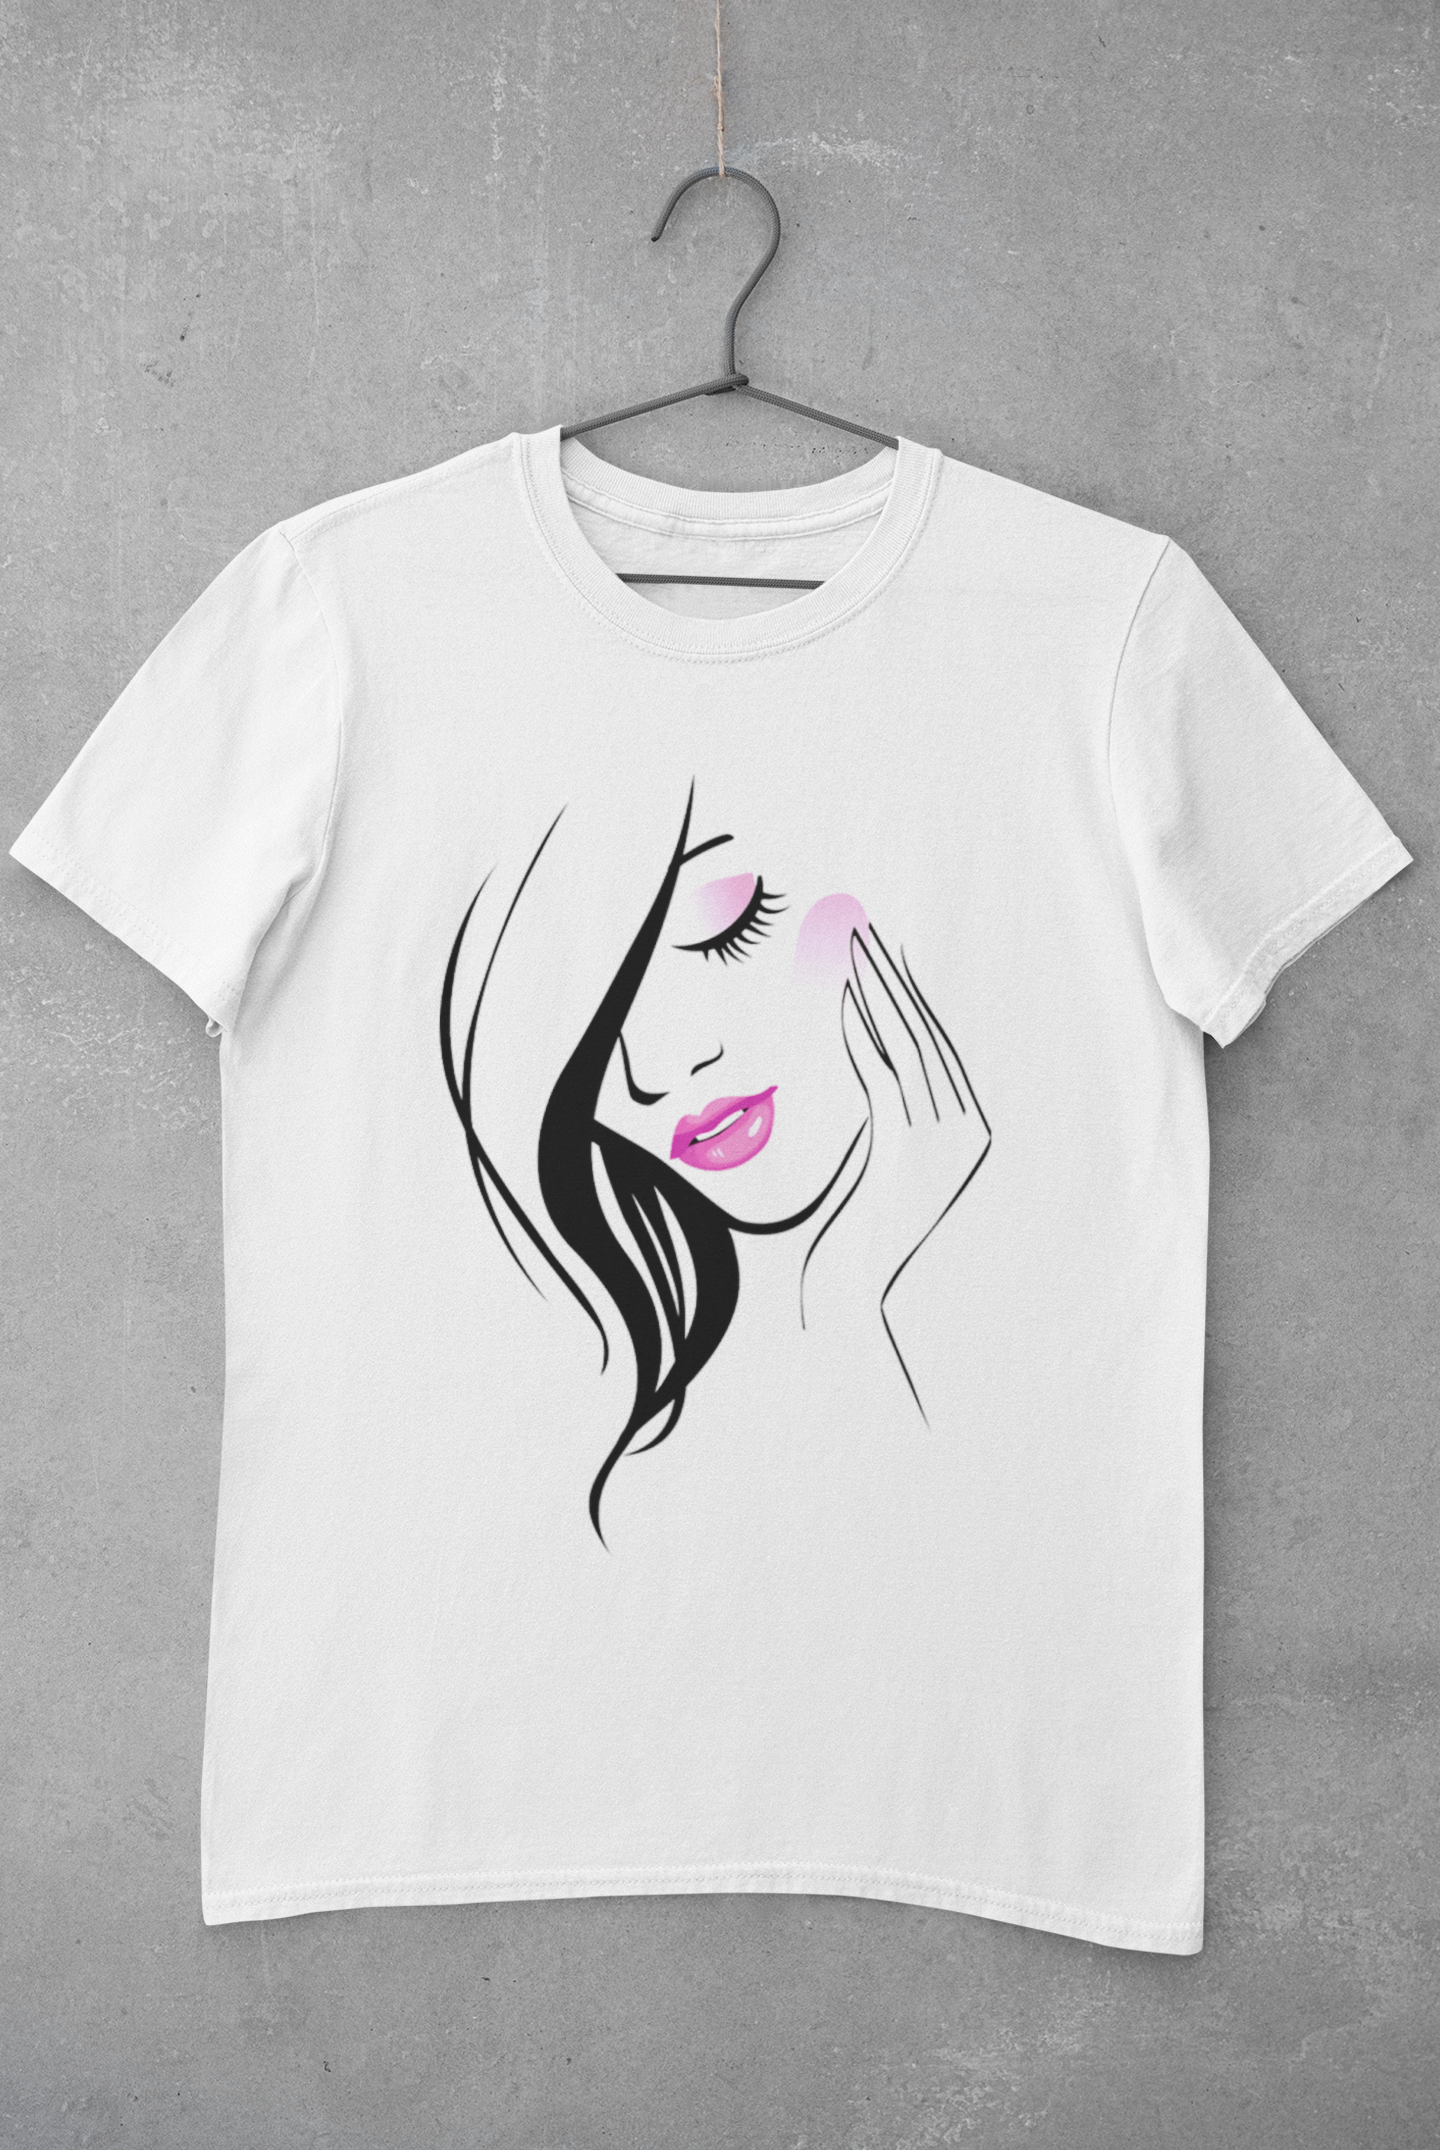 Women's T-shirt with a beautiful women's print